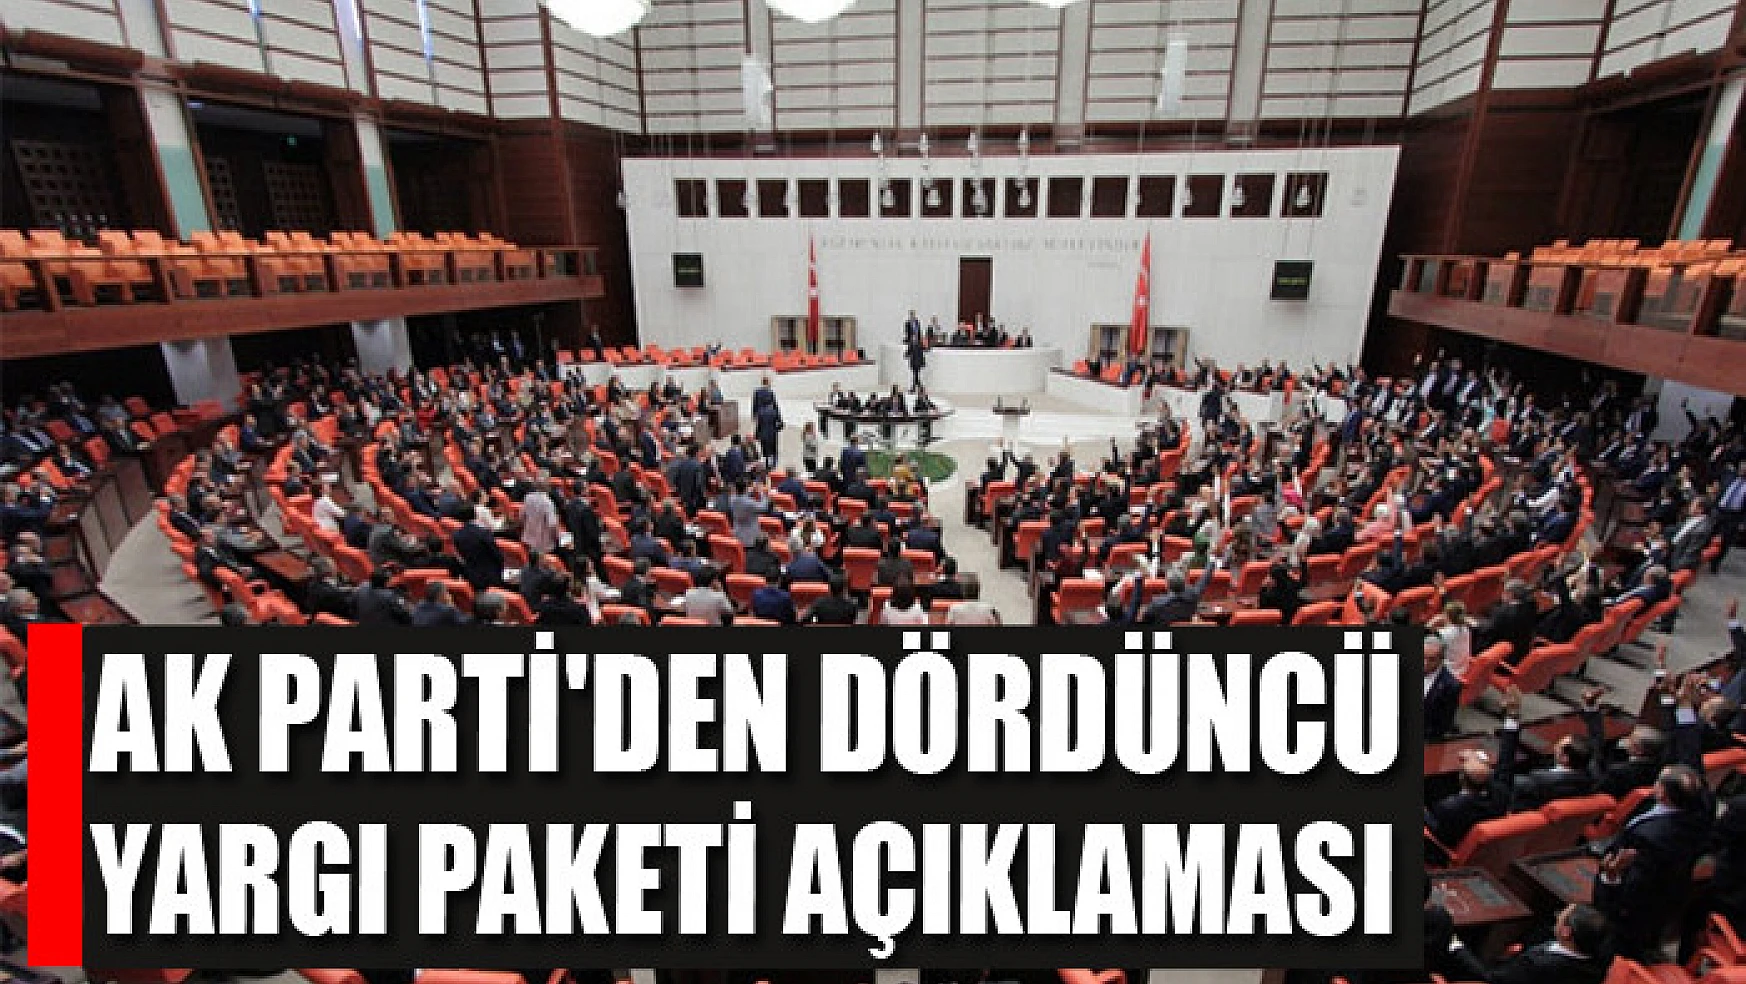 AK Parti'den dördüncü yargı paketi açıklaması